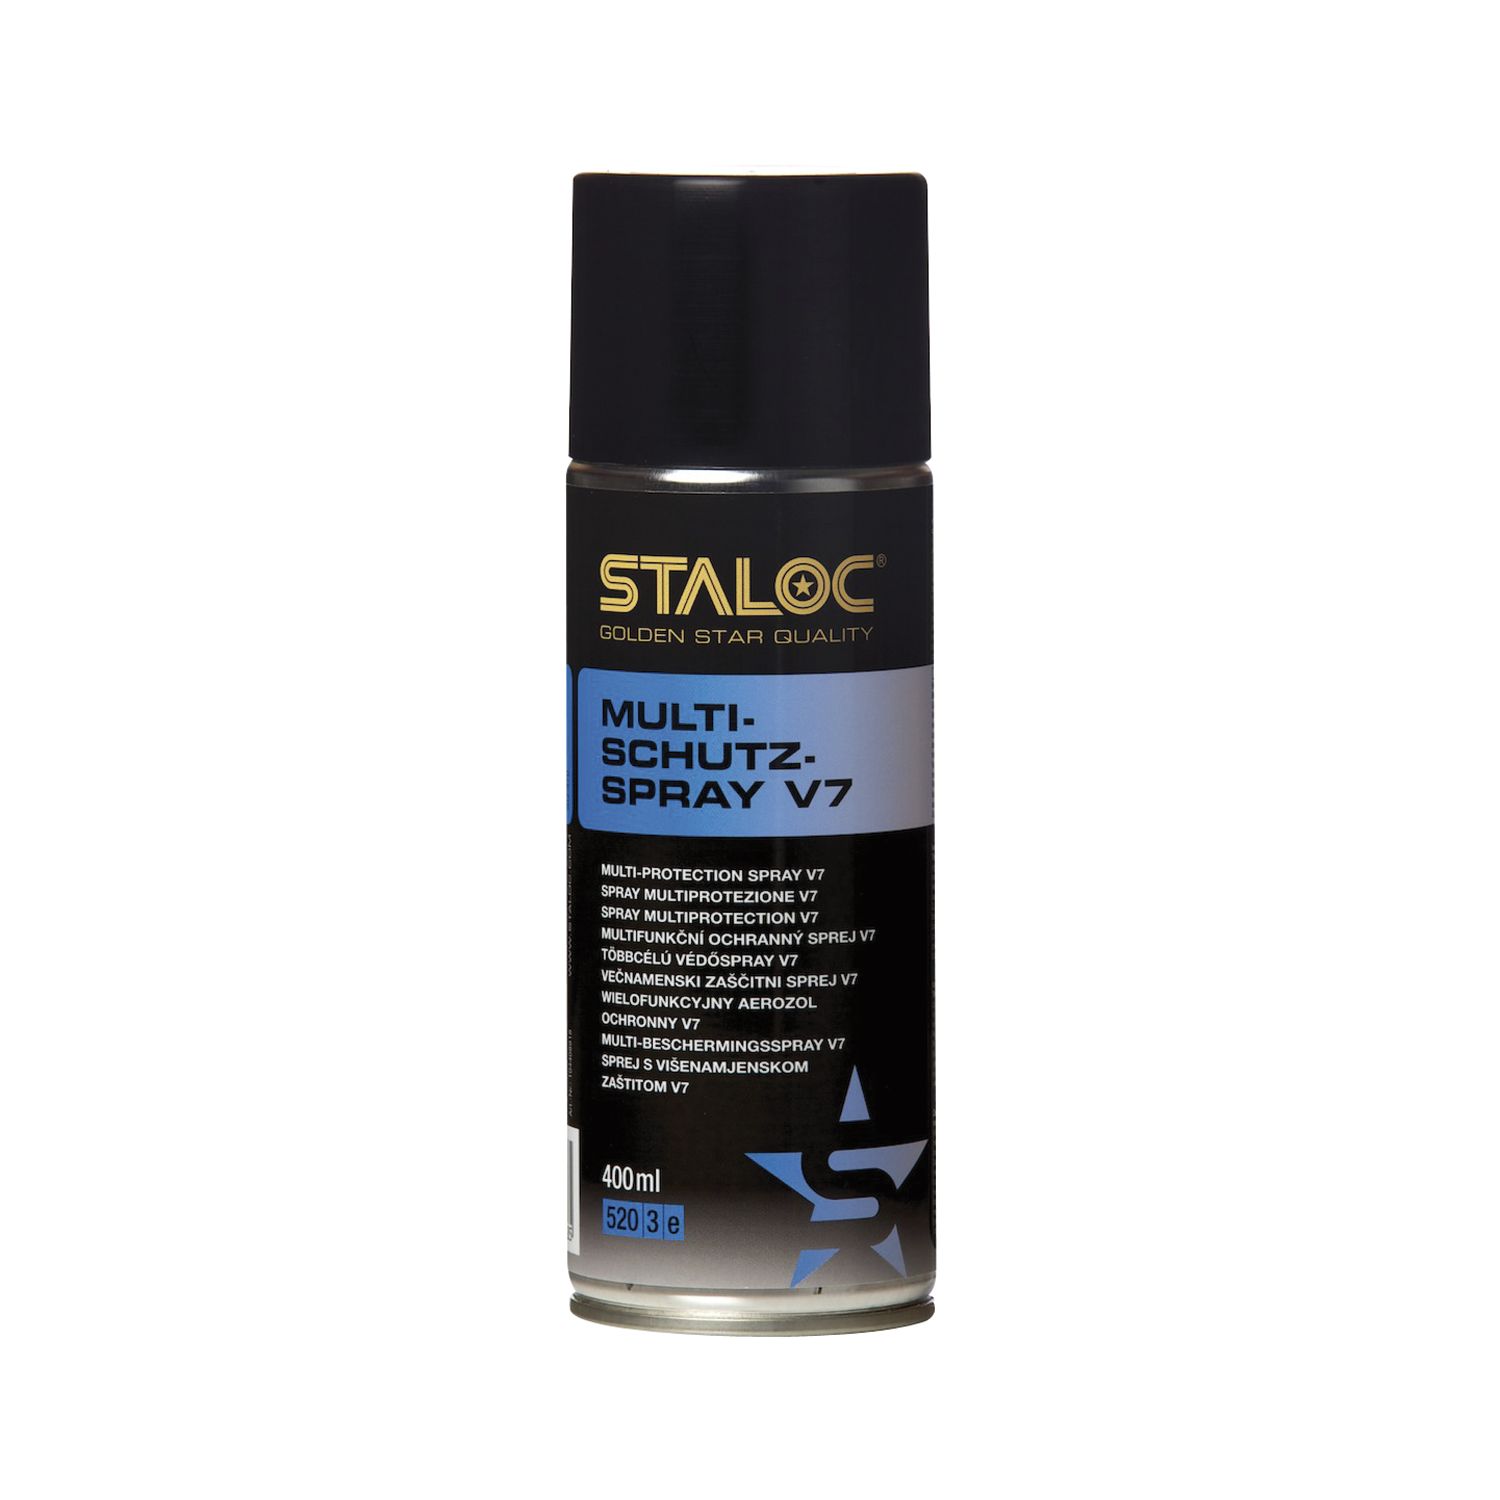 STALOC Multischutz-Spray V7 | Multischutz-Öl | Mulitfunktions-Spray | universell einsetzbar für unzählige Anwendungen | 400 ml